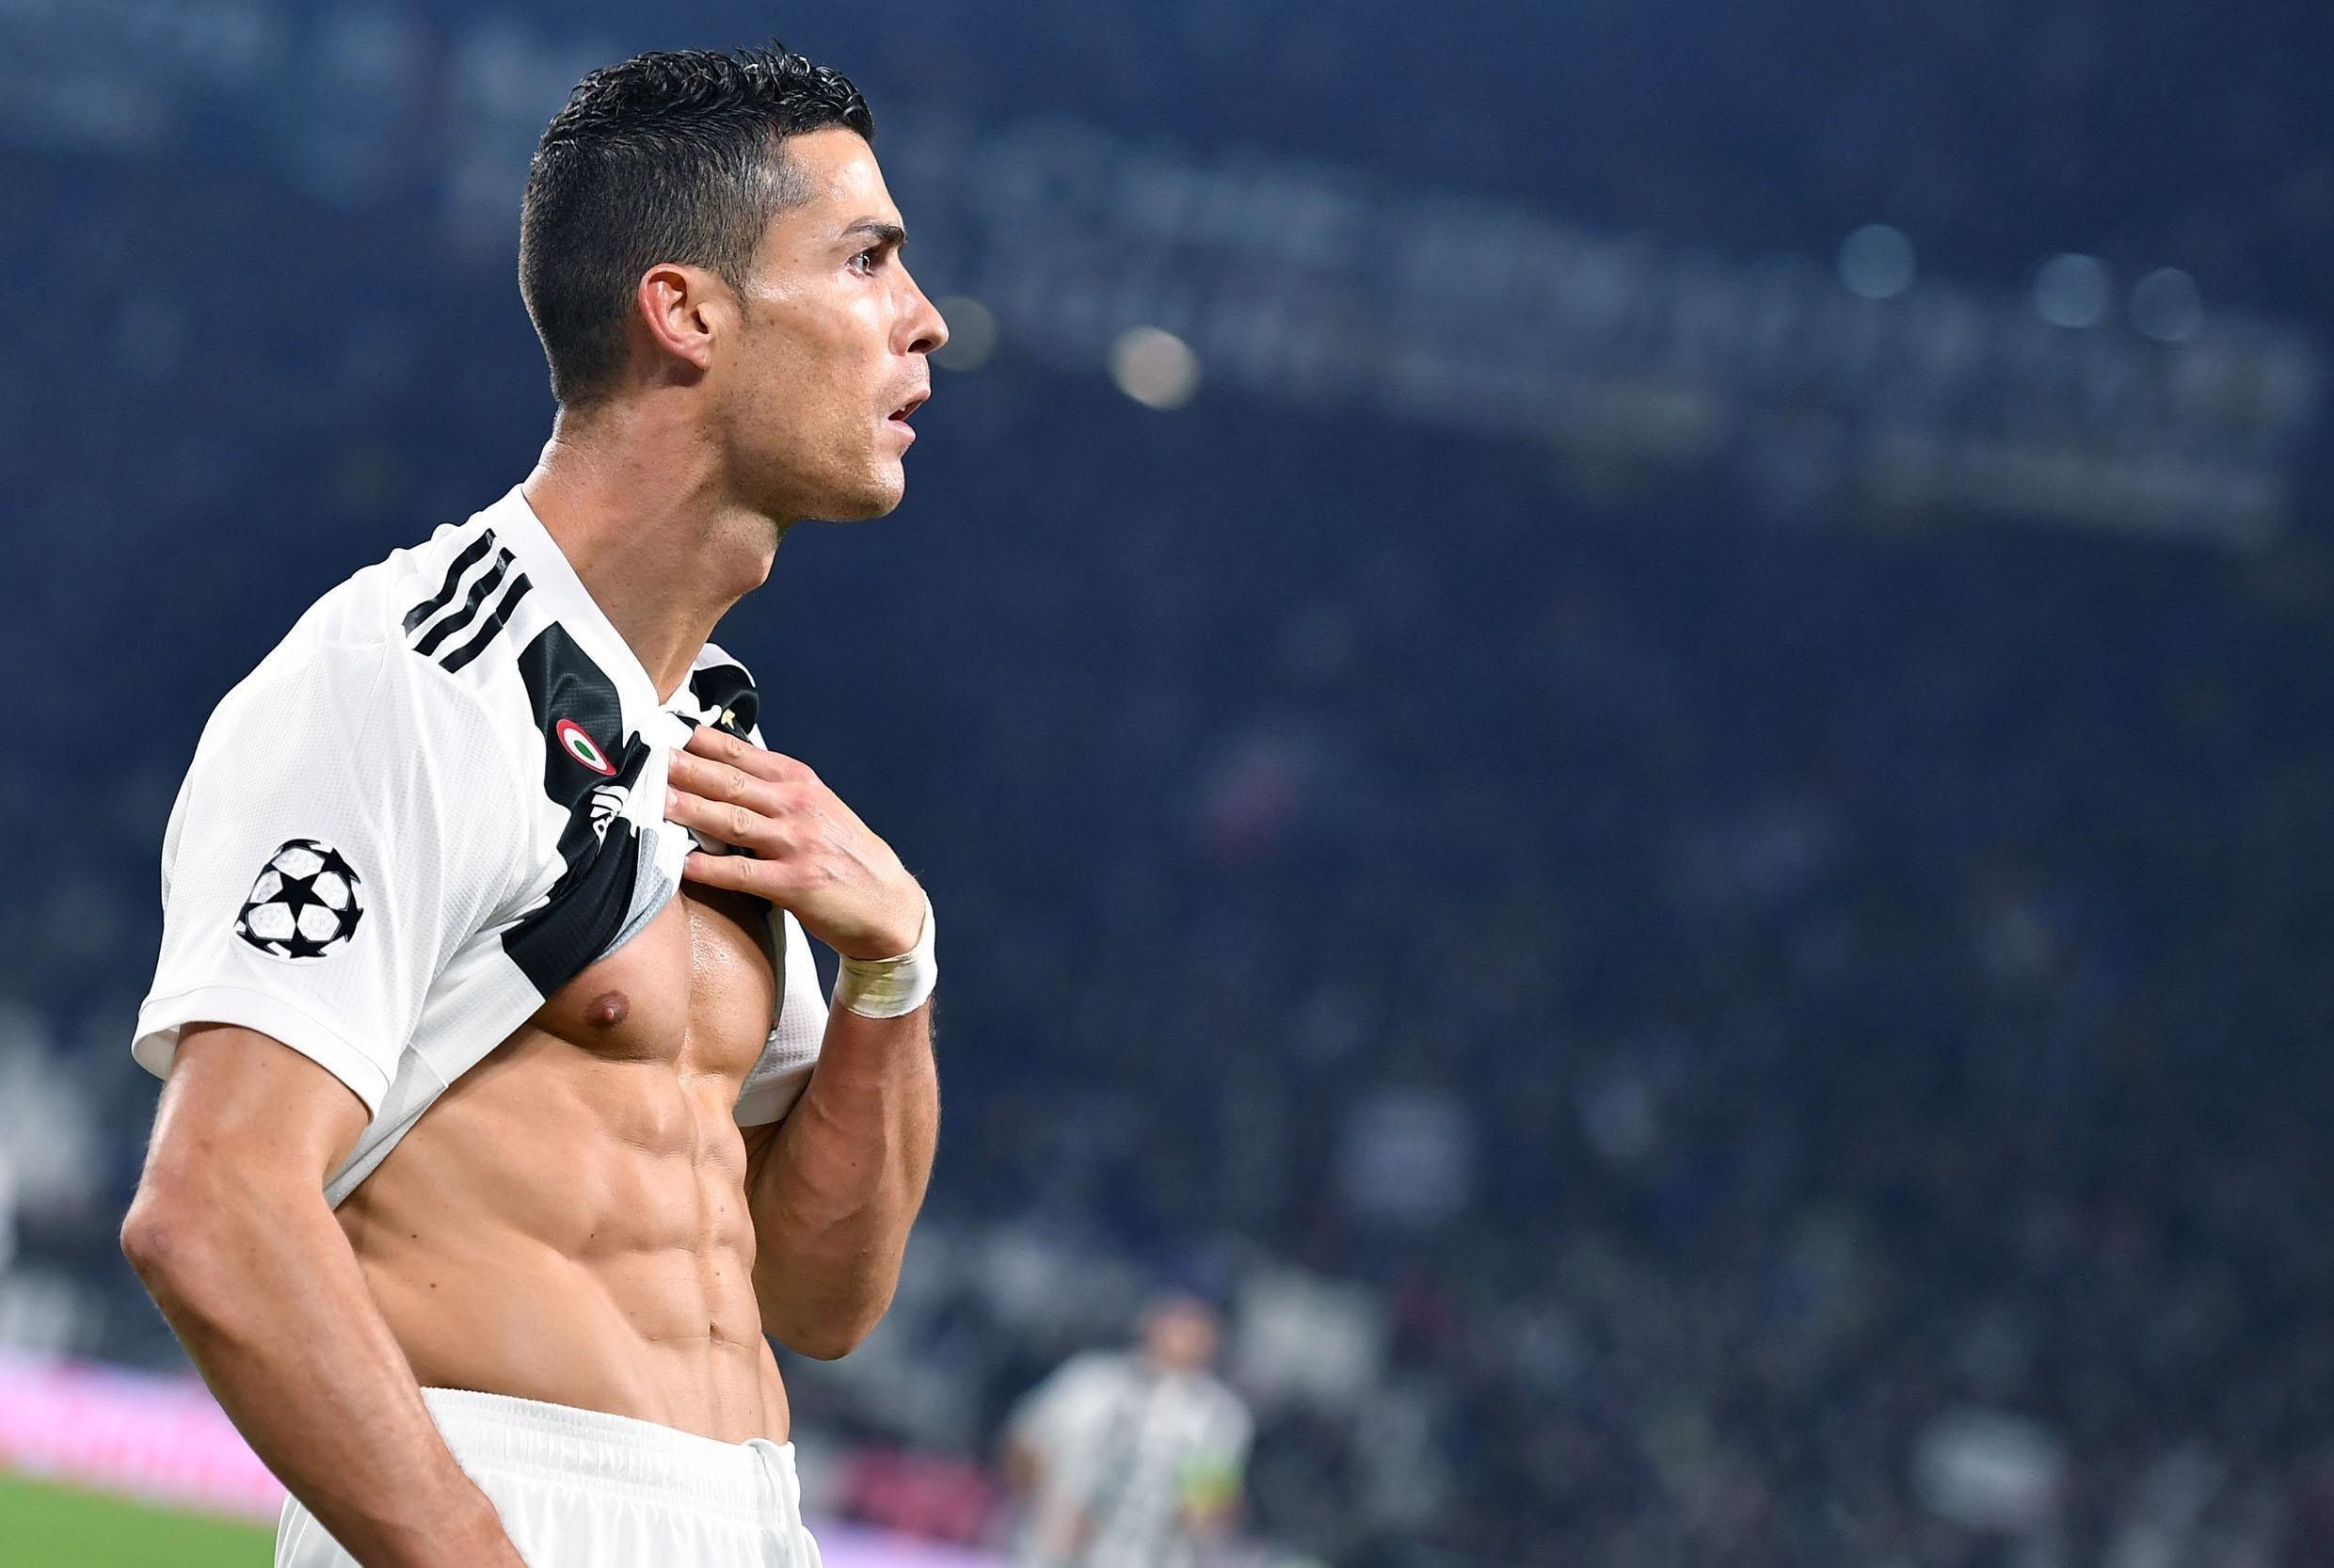 Cristiano Ronaldo en estat pur: golàs i celebració ridícula